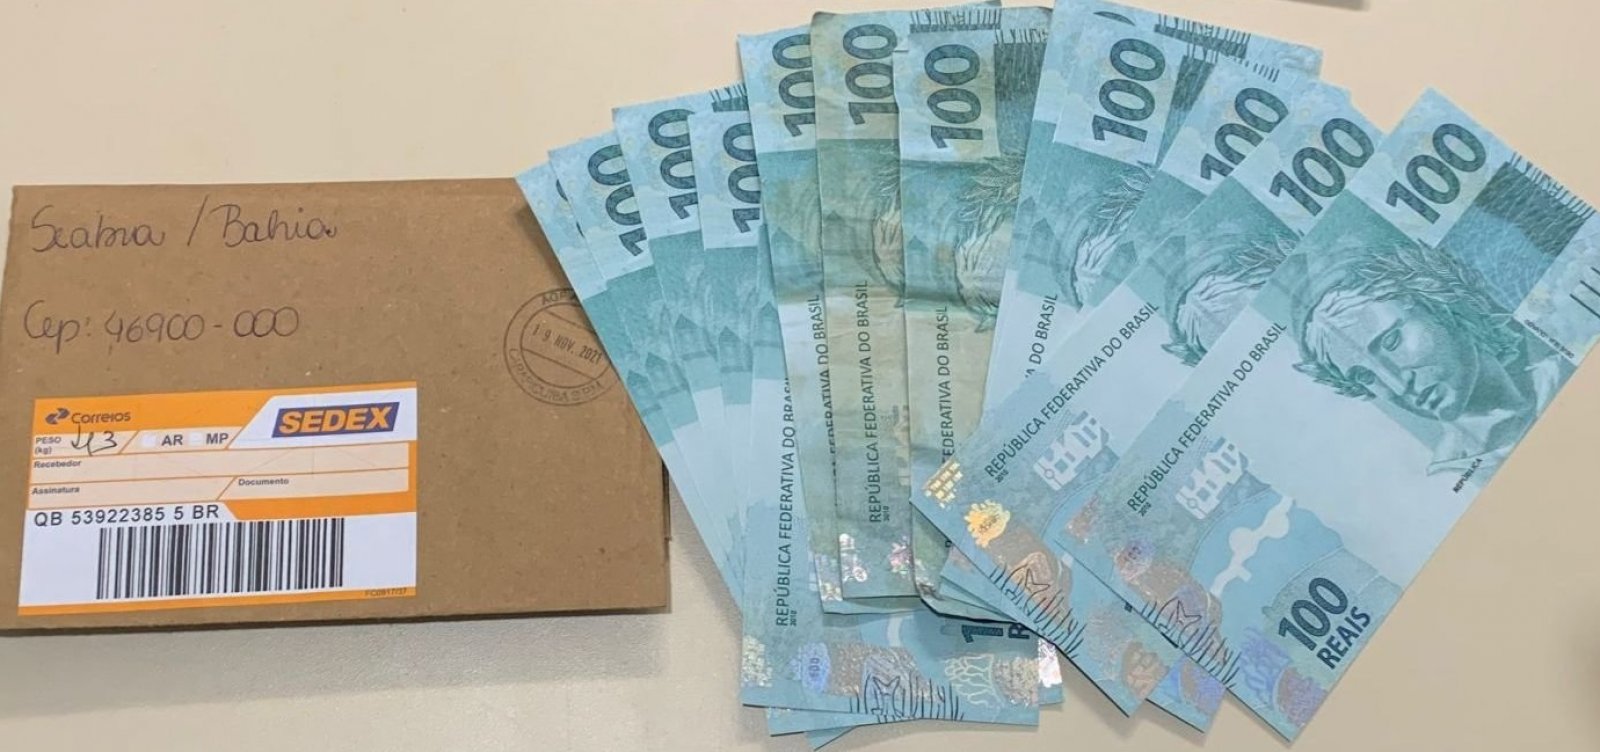 Três mulheres e um homem são presos com R$ 1,3 em cédulas falsas em Seabra